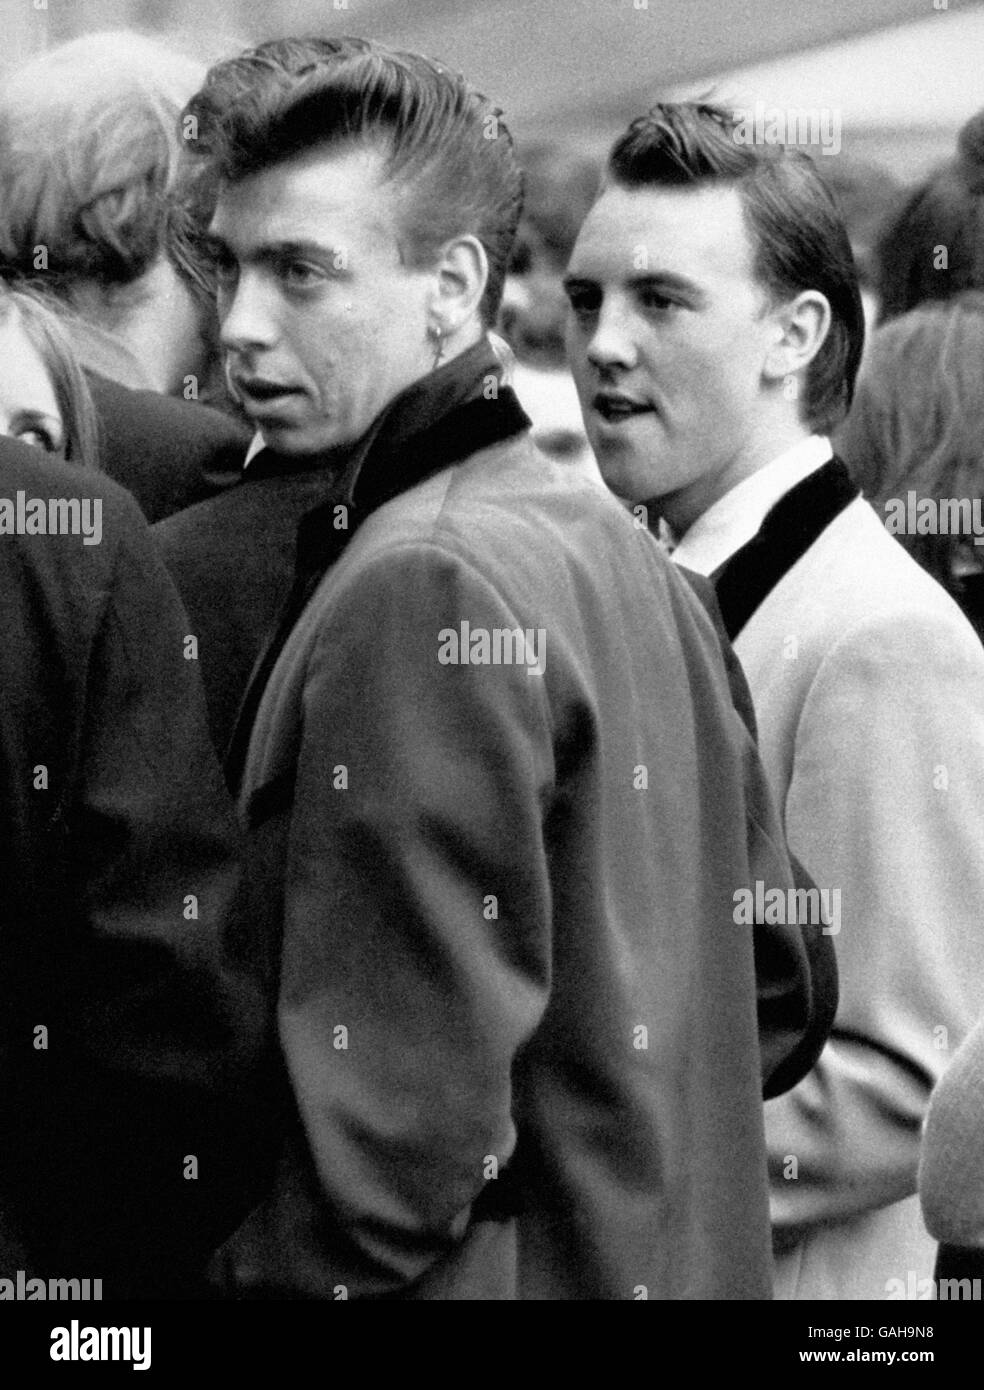 Teddy Boys - Wembley - 1960 Stock Photo